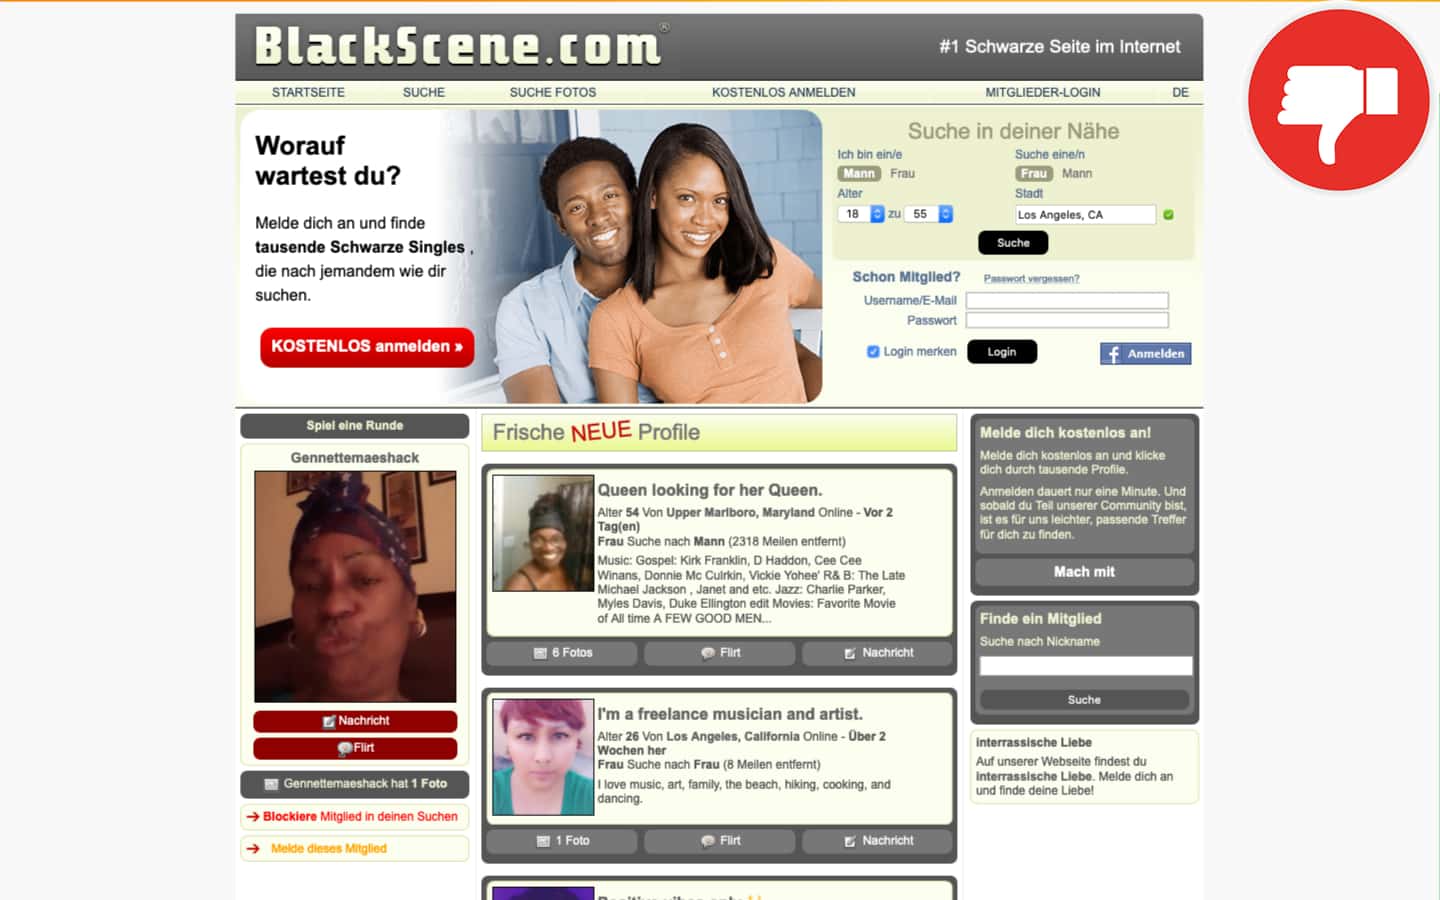 Review BlackScene.com scam